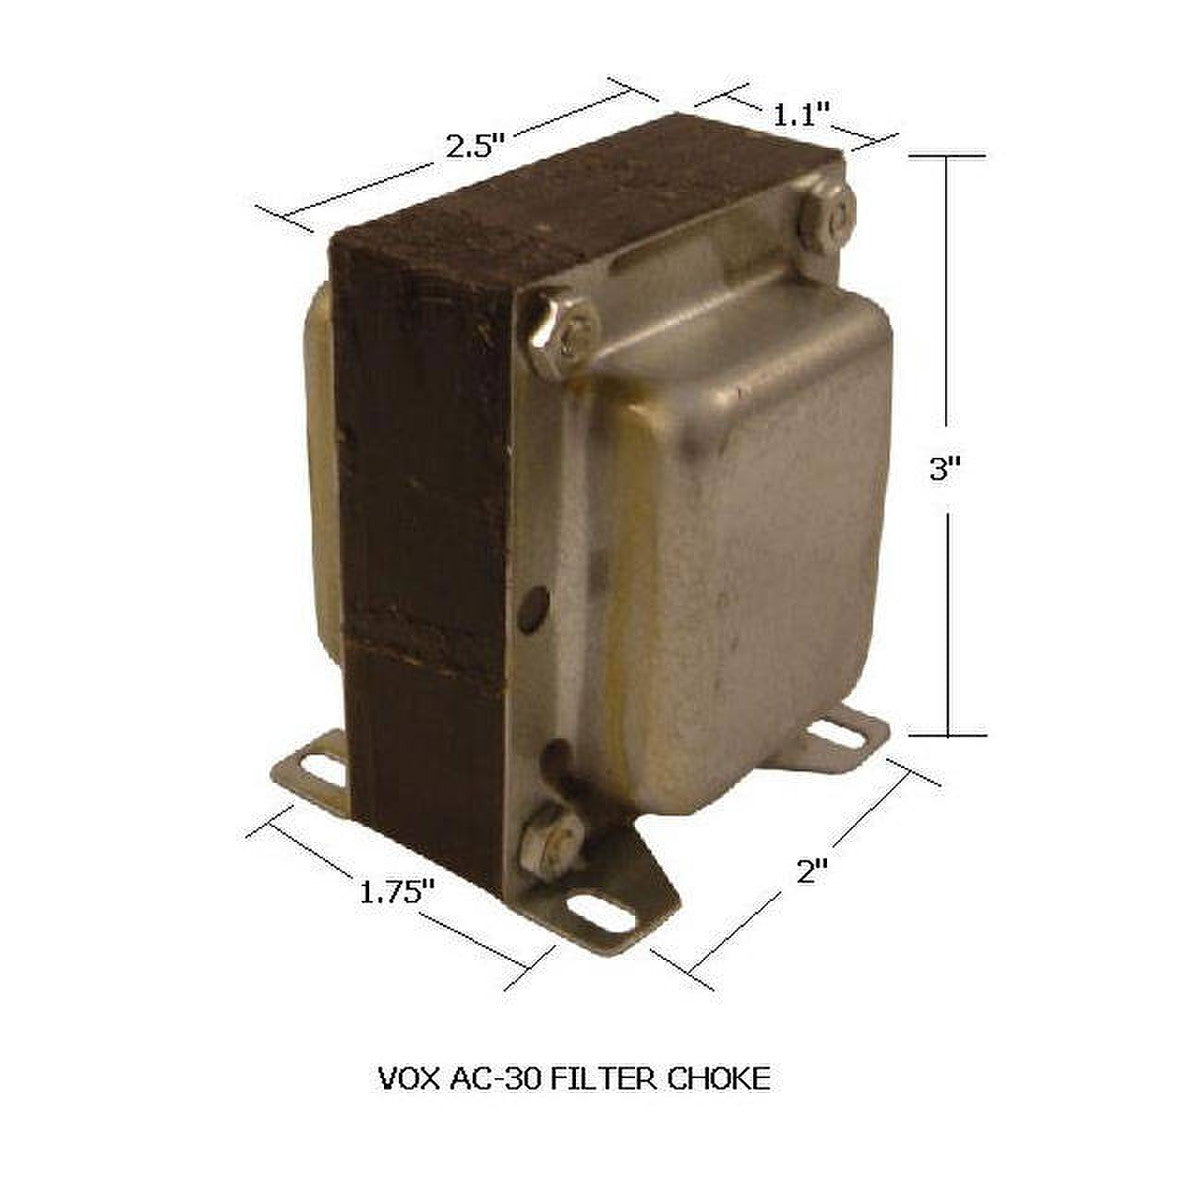 Amp filter choke for Vox AC-30